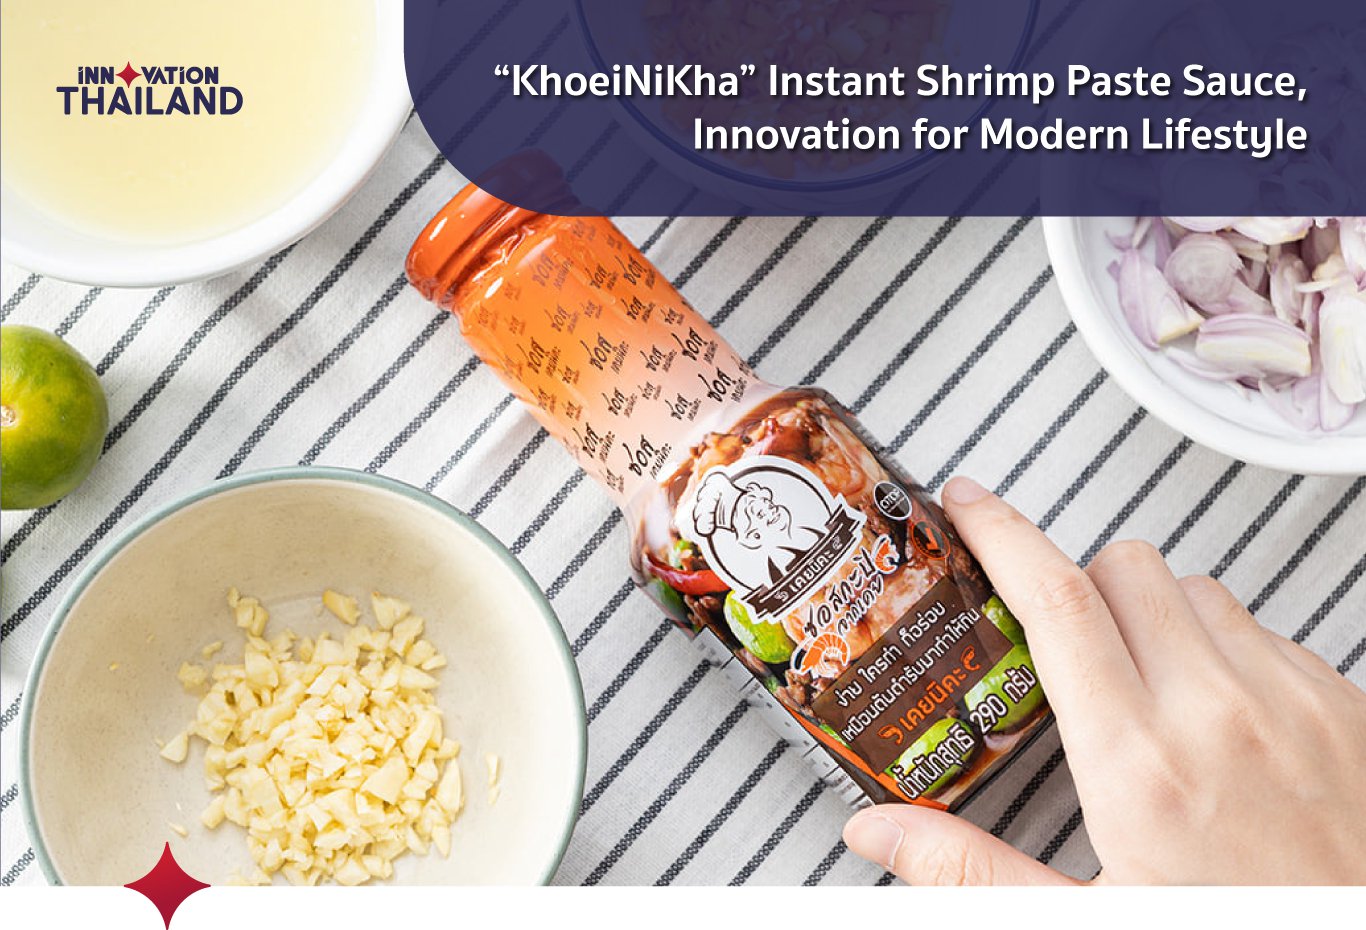 KhoeiNiKha Instant Shrimp Paste Sauce, Innovation for Modern Lifestyle